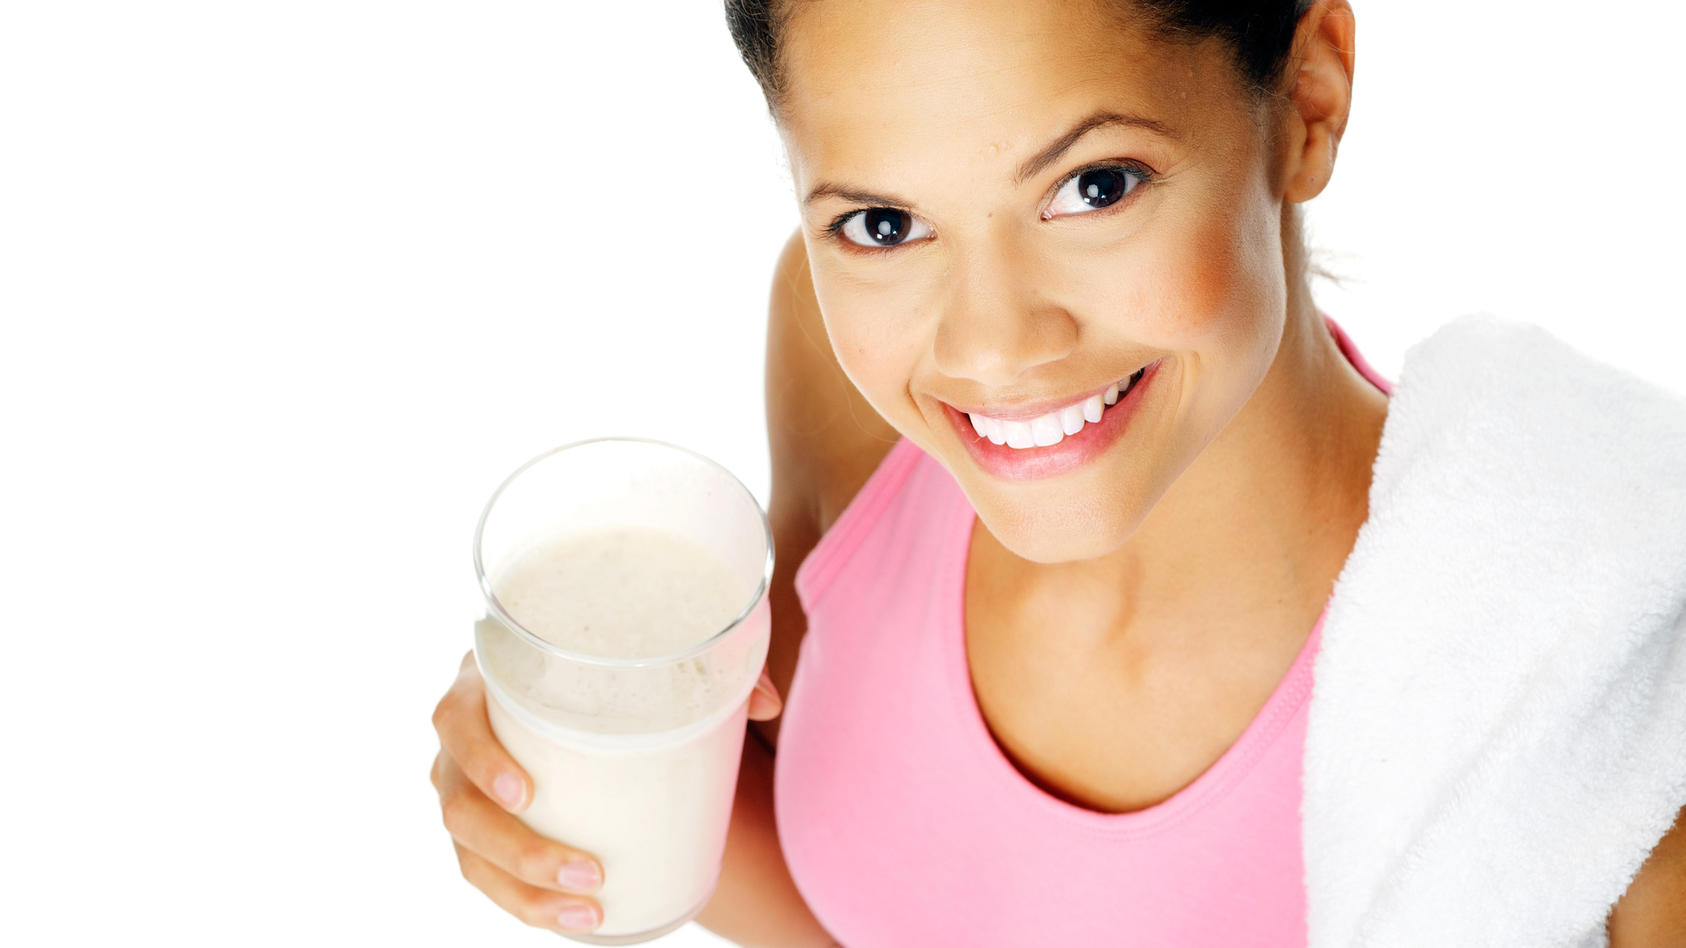 Fördert Milch tatsächlich Übergewicht und Krebs? Schwedische Studie liefert erschreckende Ergebnisse 